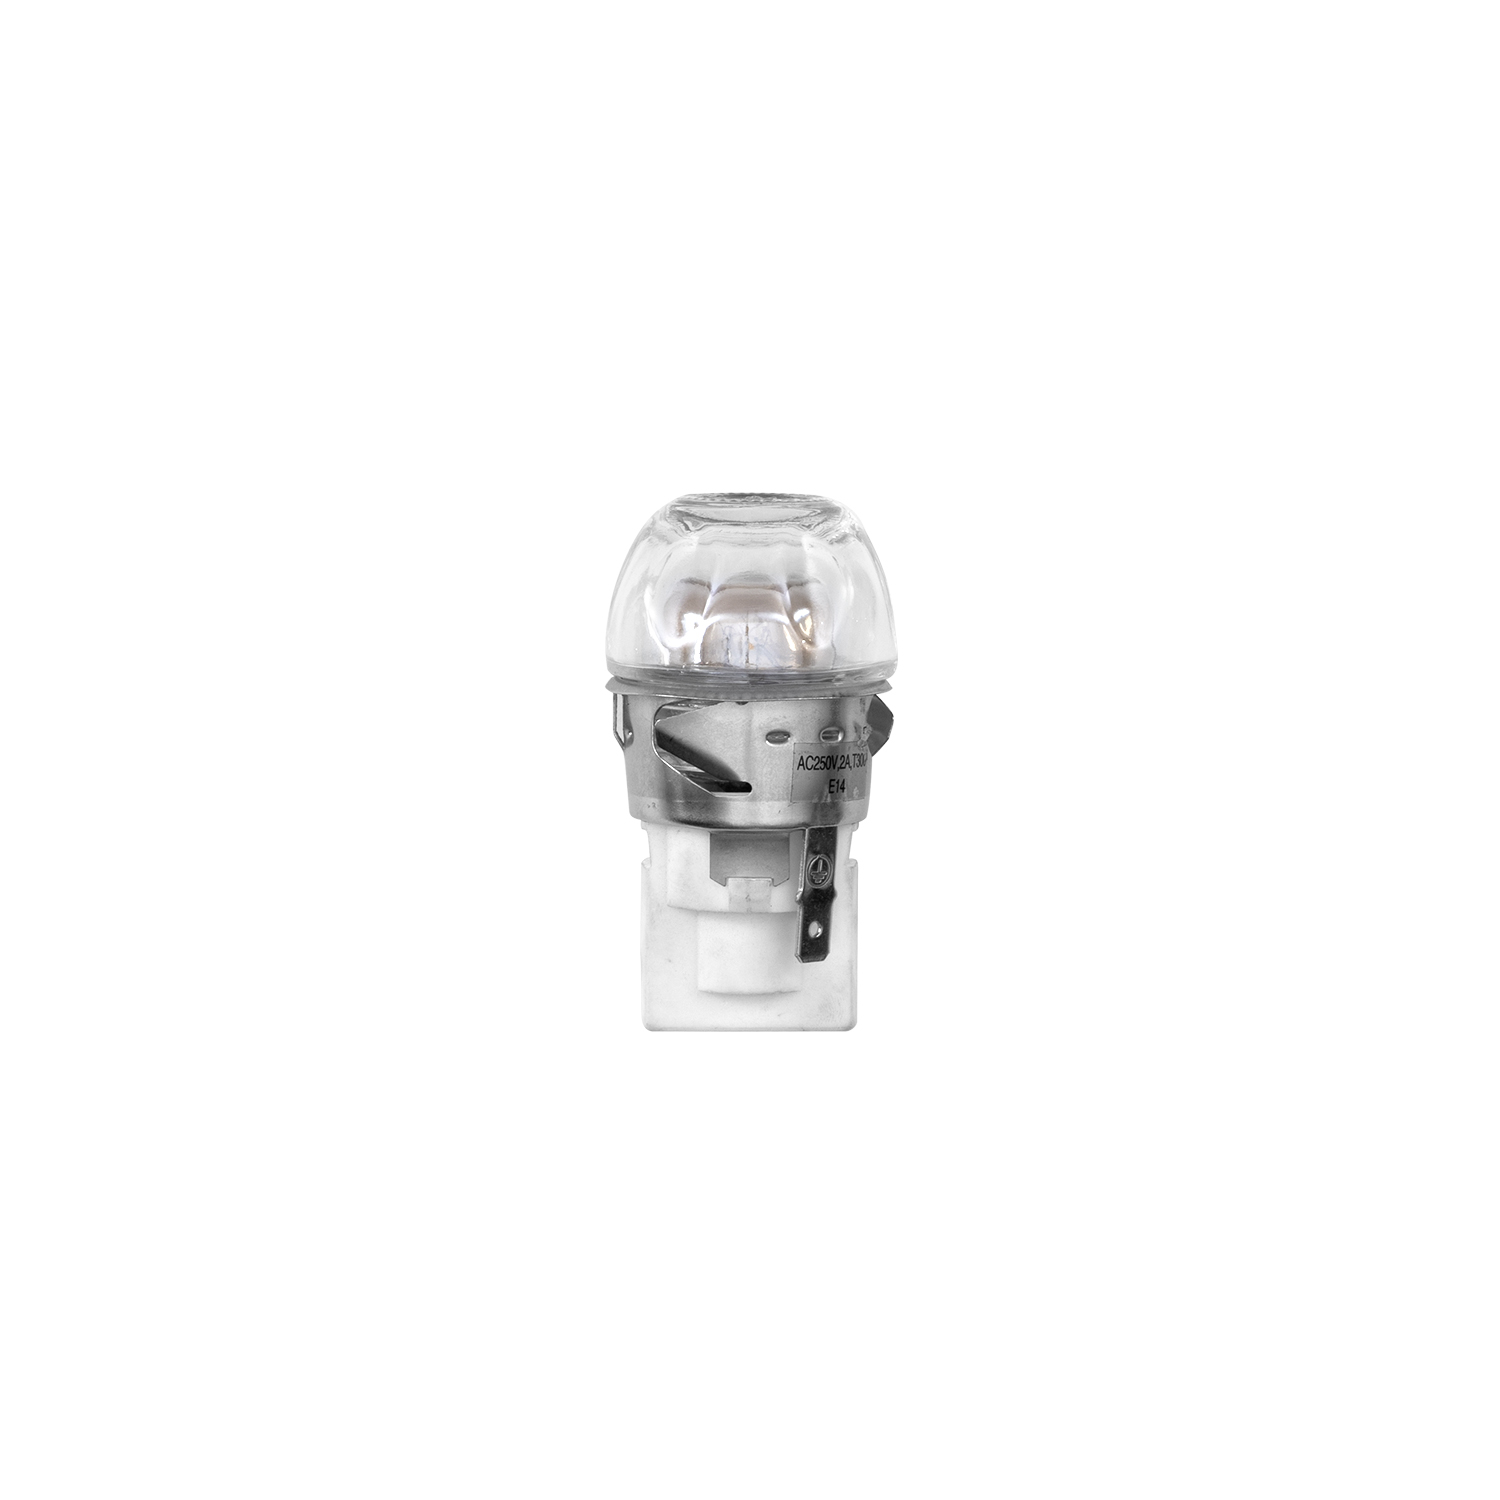 Oven Light Bulb for F965 Series Range Models (ADA Version) (30101000001)